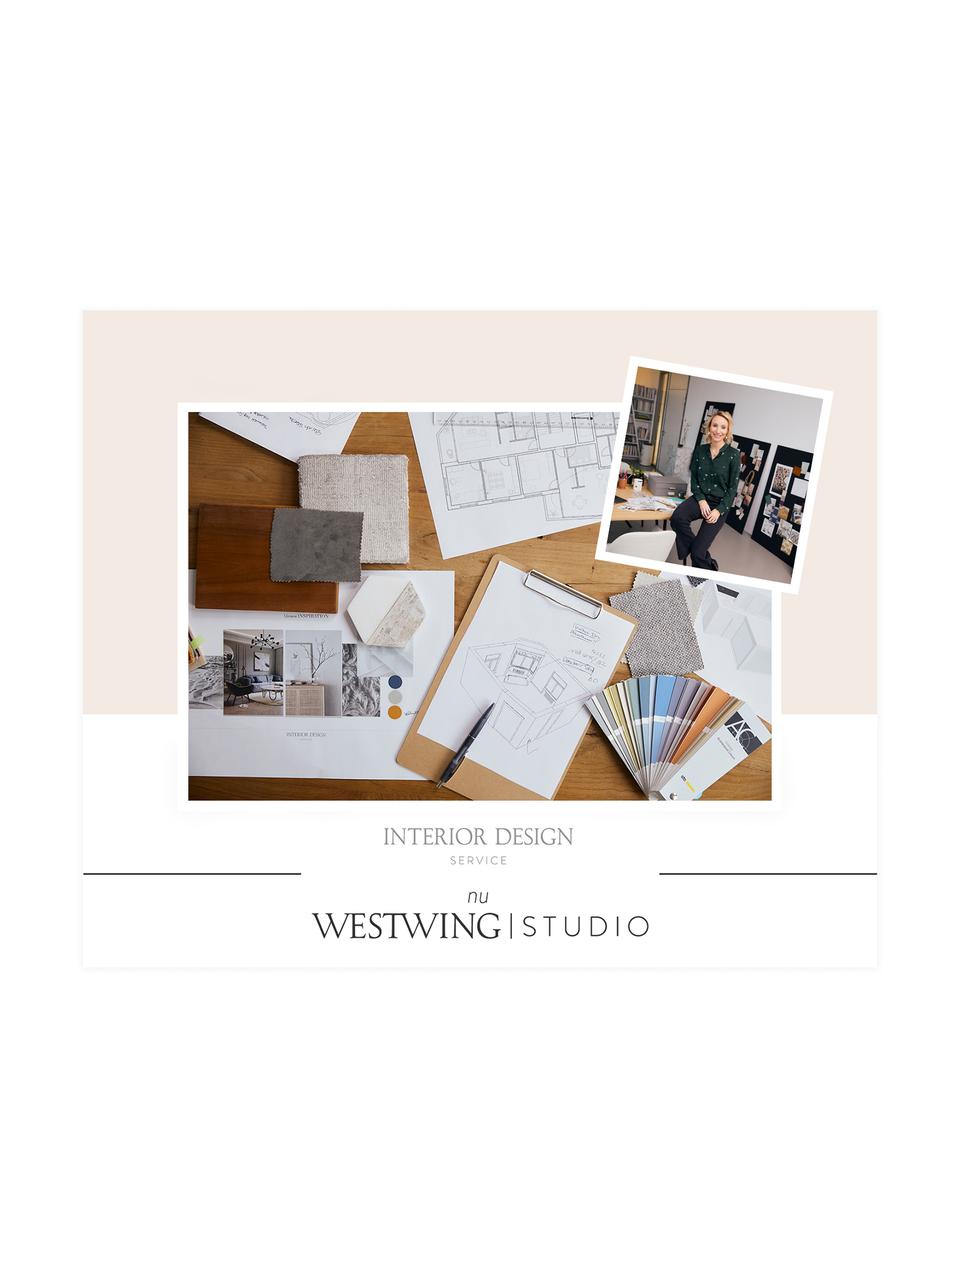 Westwing Studio | 3D concept en advies voor jouw woonruimte, Digitale voucher.
Na ontvangst van jouw bestelling nemen wij snel contact met je op om een afspraak te maken voor een telefonisch consult met jouw persoonlijke iterior designer., Wit, Woonruimte(s)